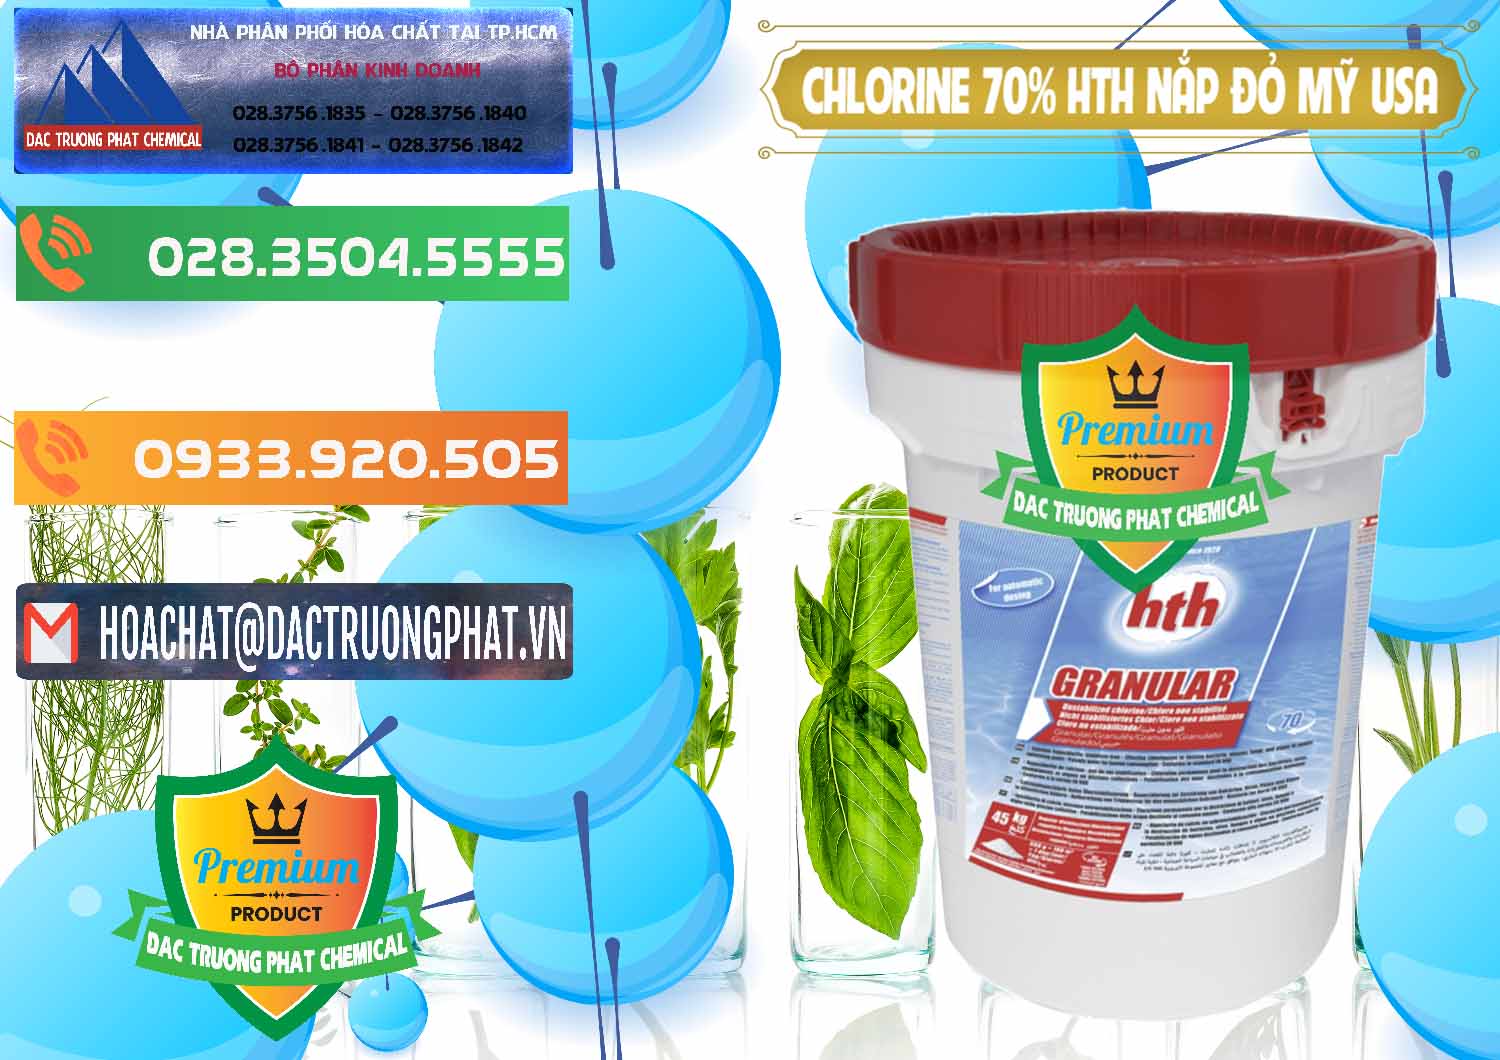 Cty chuyên bán và cung ứng Clorin – Chlorine 70% HTH Nắp Đỏ Mỹ Usa - 0244 - Đơn vị phân phối - cung cấp hóa chất tại TP.HCM - hoachatxulynuoc.com.vn